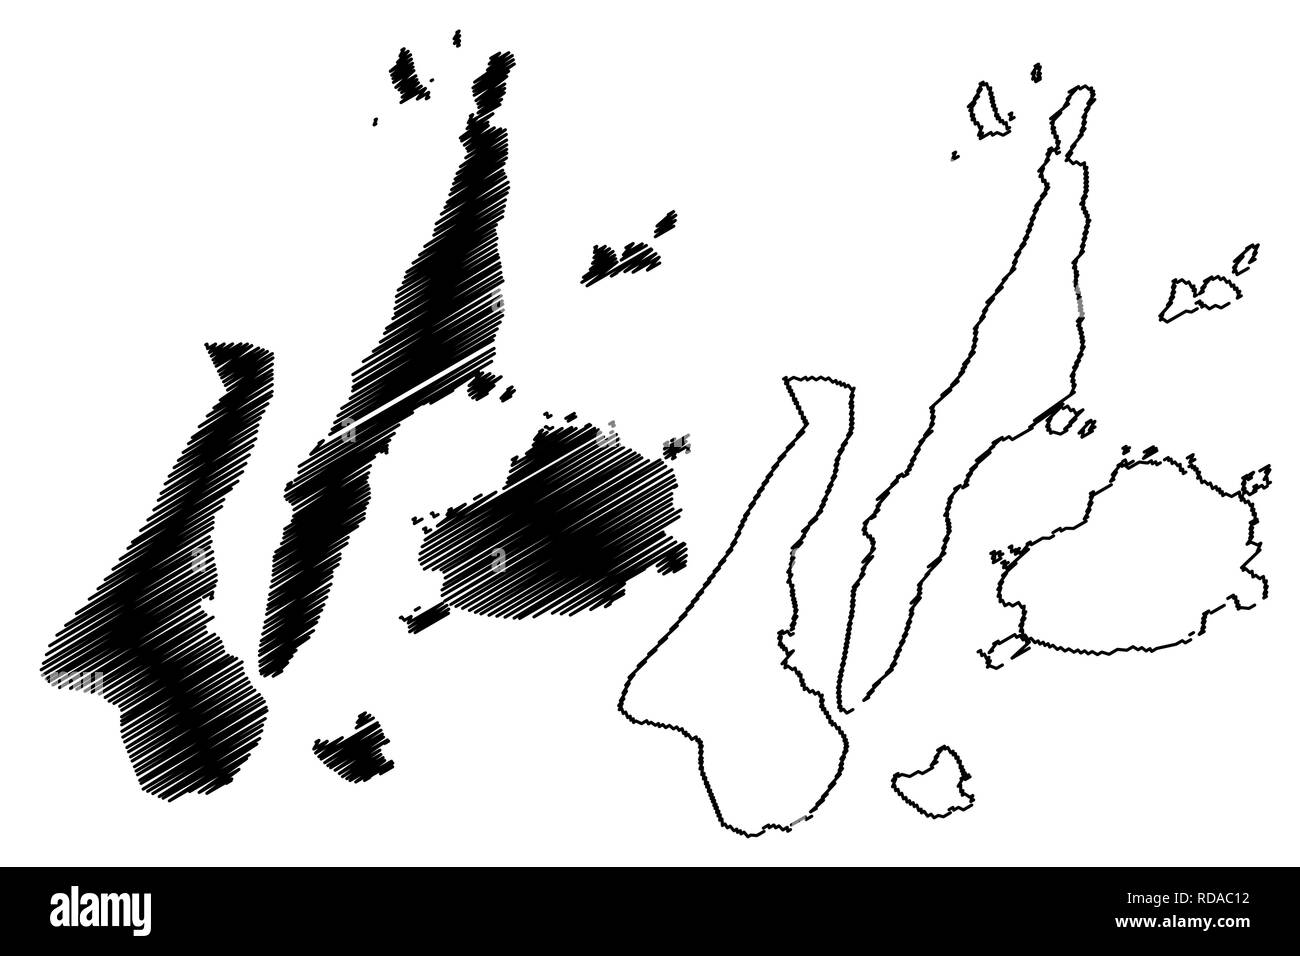 Central Visayas Region (Regionen und Provinzen der Philippinen, die Republik der Philippinen) Karte Vektor-illustration, kritzeln Skizze Region VII Karte Stock Vektor